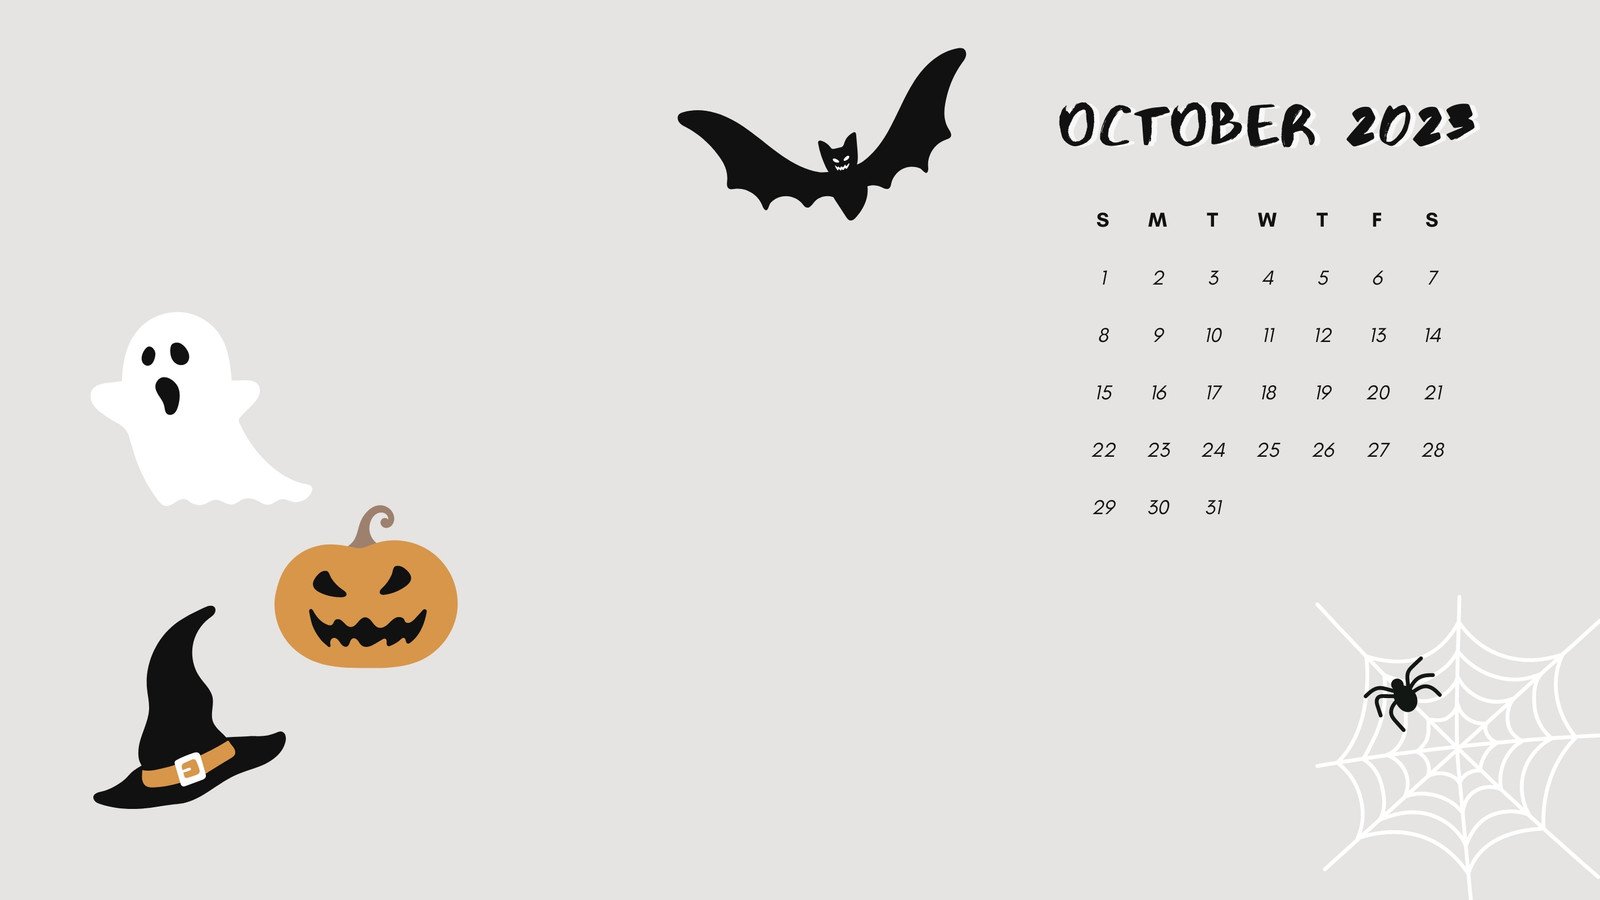 27 Cute Halloween Wallpaper Ideas  Bat and Pumpkin on Peach Background   Idea Wallpapers  iPhone WallpapersColor Schemes